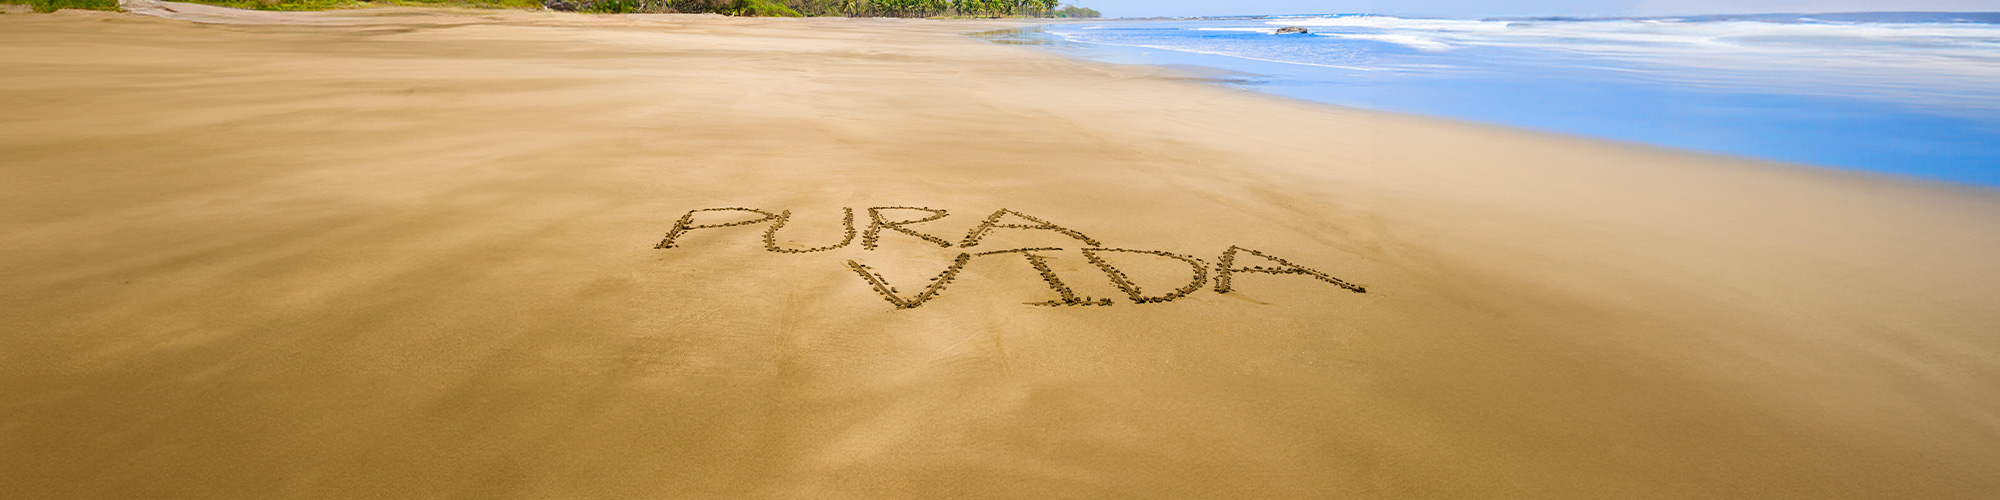 Pura vida escrito en arena en playa de Guanacaste, Costa Rica